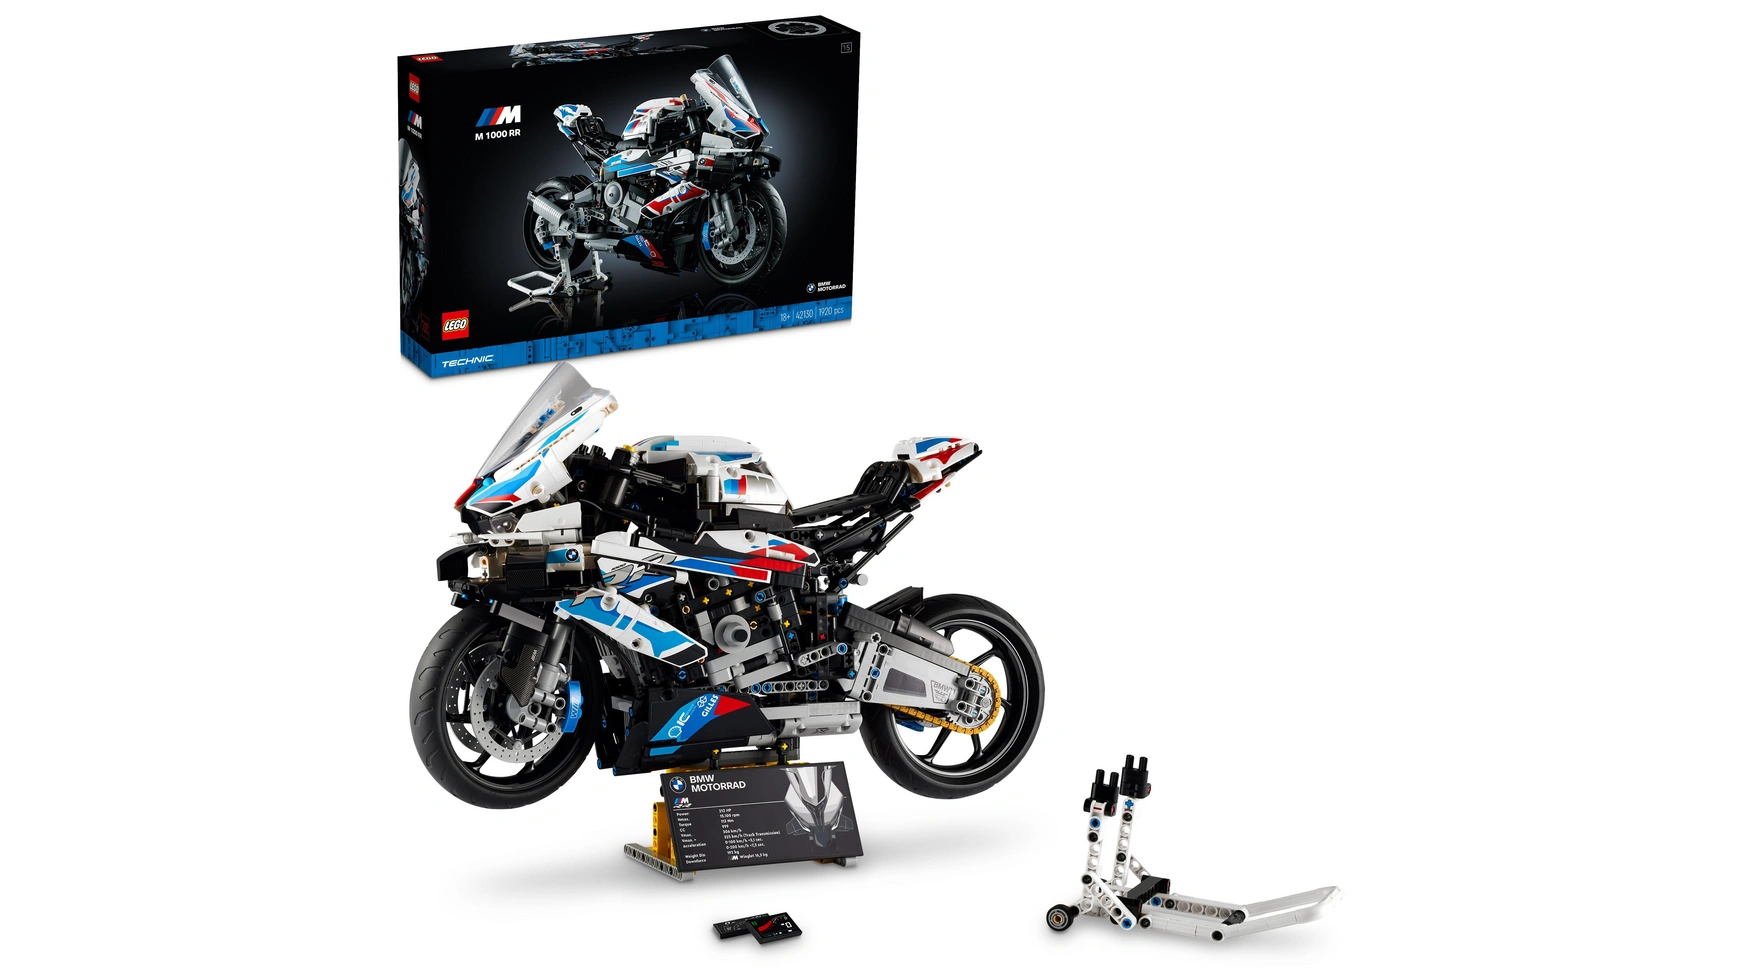 Lego Technic BMW M 1000 RR, модель мотоцикла для взрослых